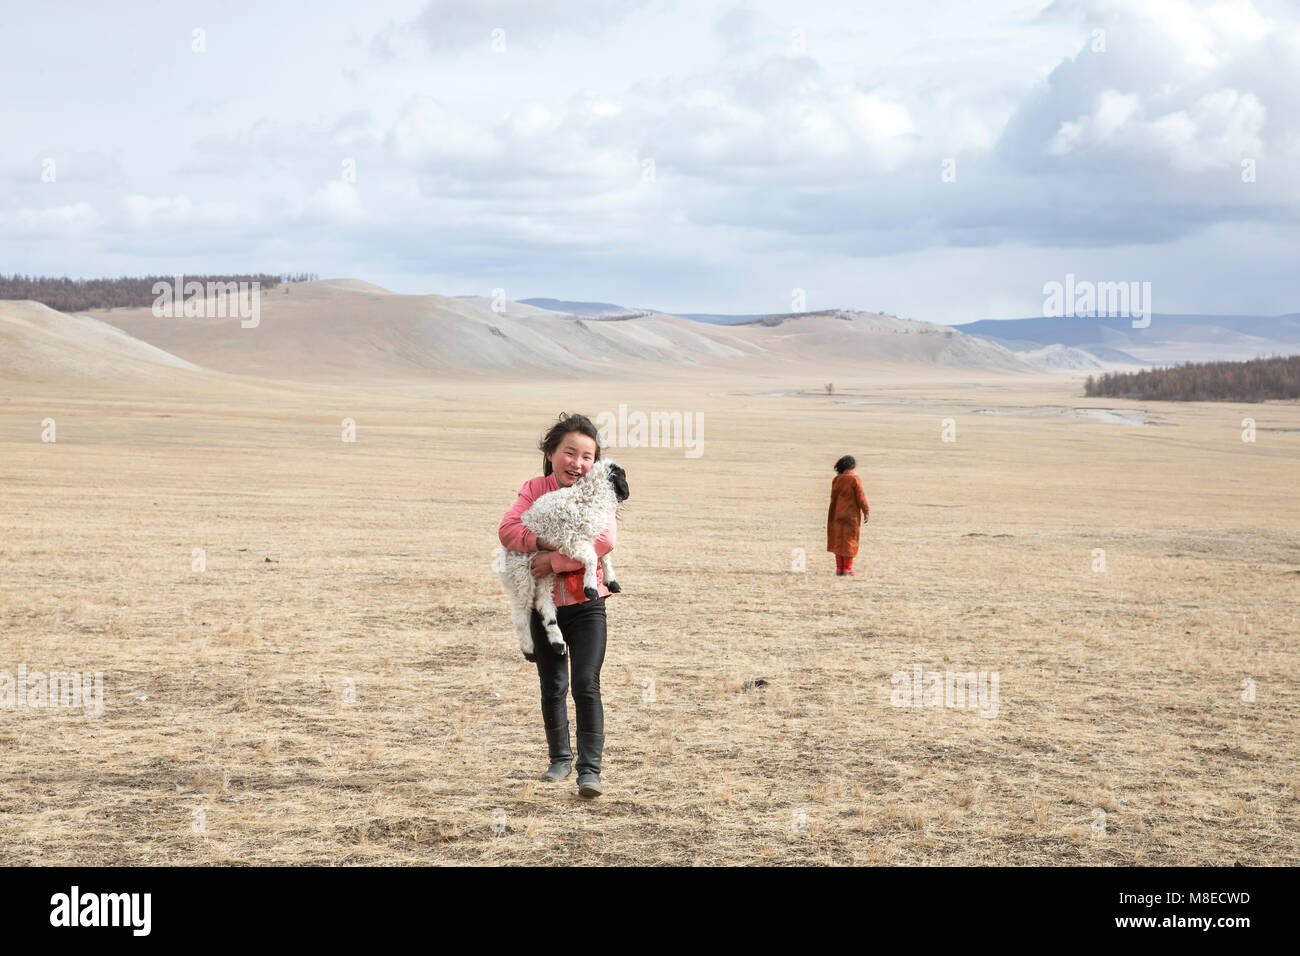 Hatgal, la Mongolie, le 2 mars 2018 : les filles de Mongolie avec leur animal de moutons dans une steppe Banque D'Images